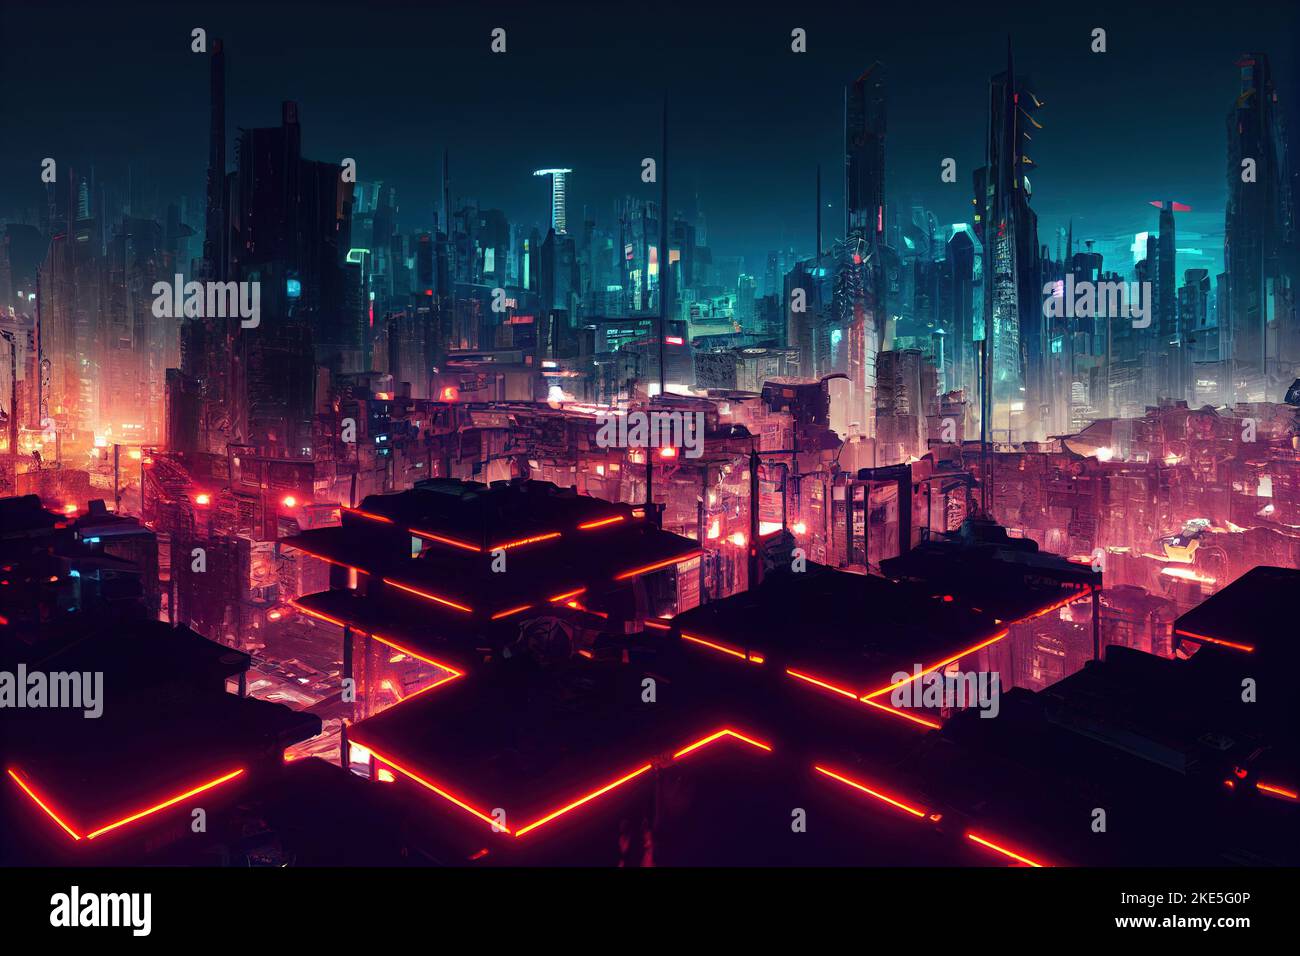 4K, cyberpunk, cyber city, futuristic city, artwork, futuristic, skyscraper